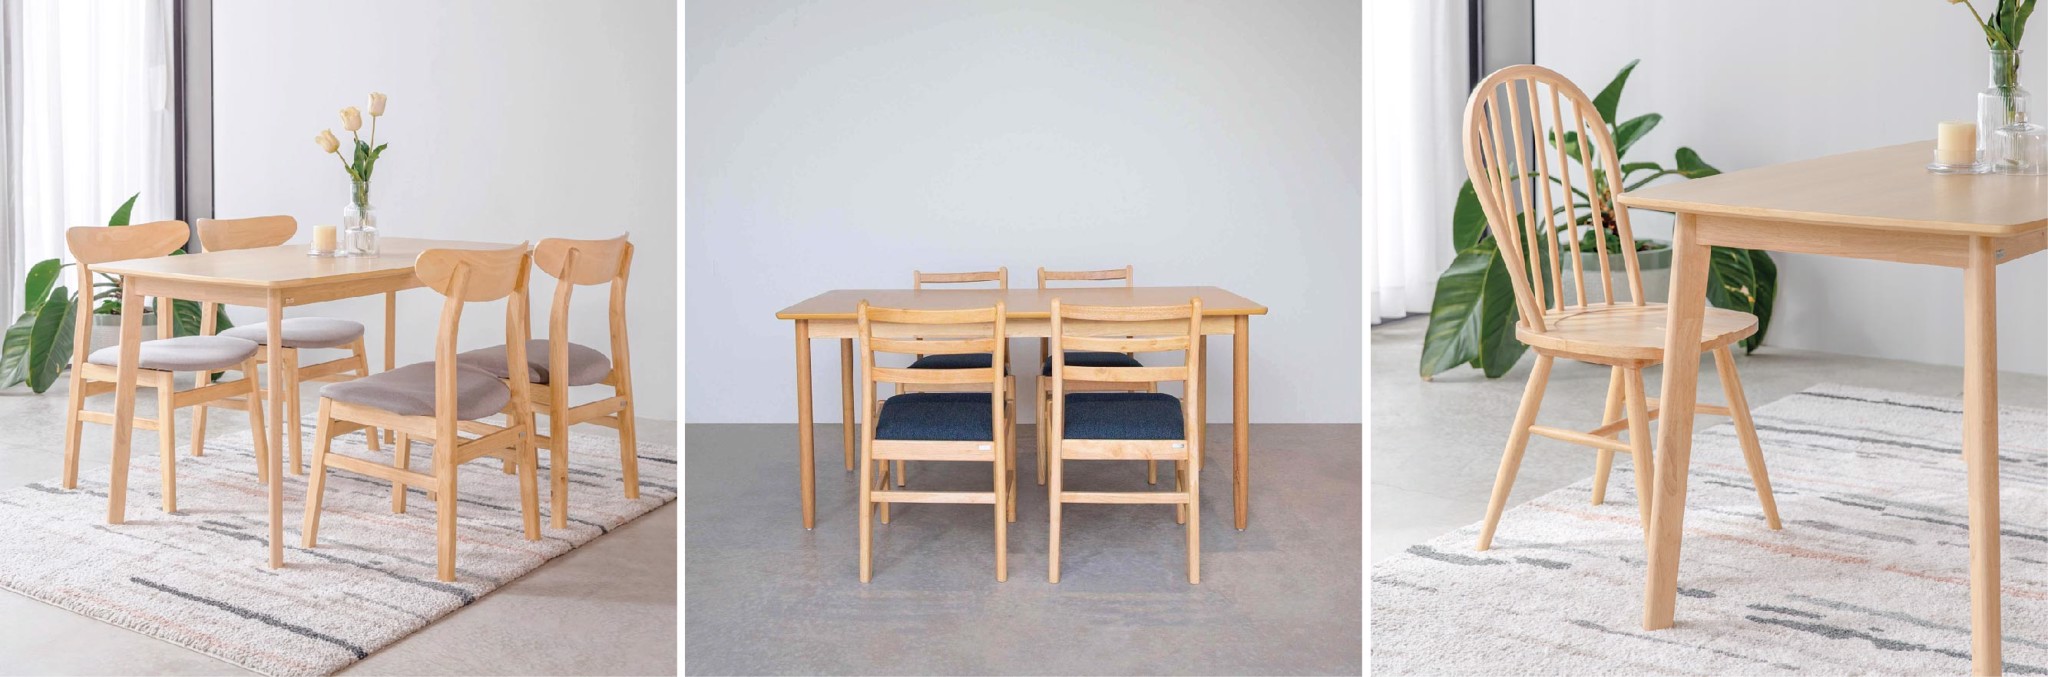 Bộ bàn ăn gỗ 4 ghế OSLO